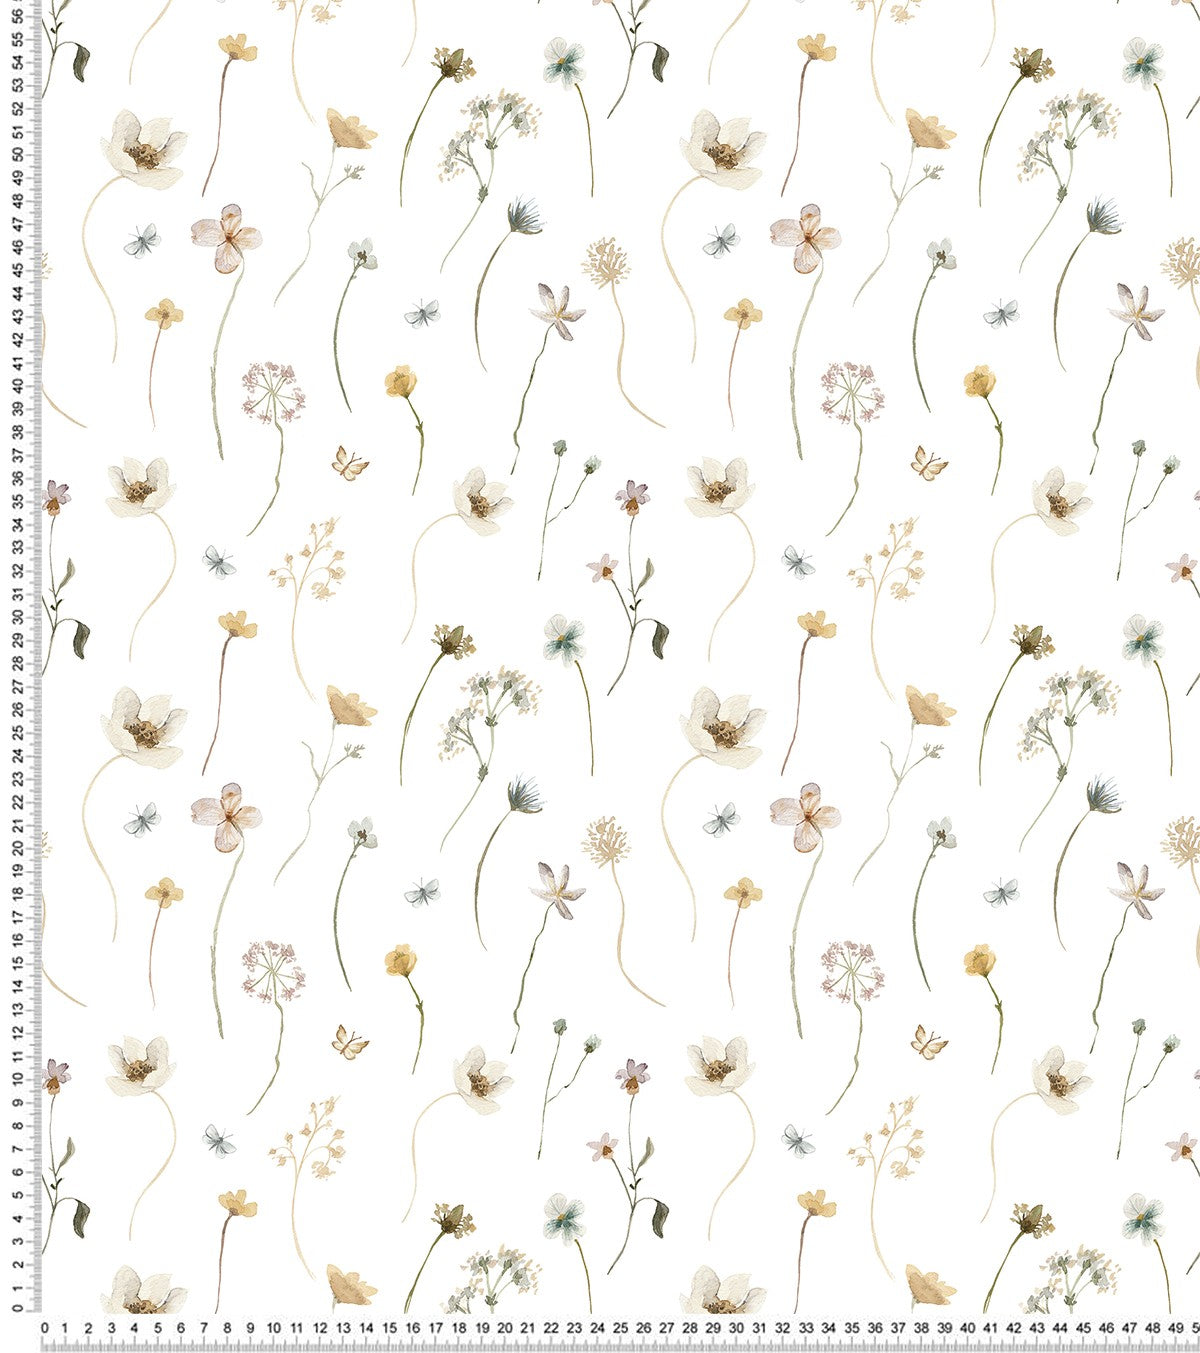 MADEMOISELLE - Children's wallpaper - May flower motif